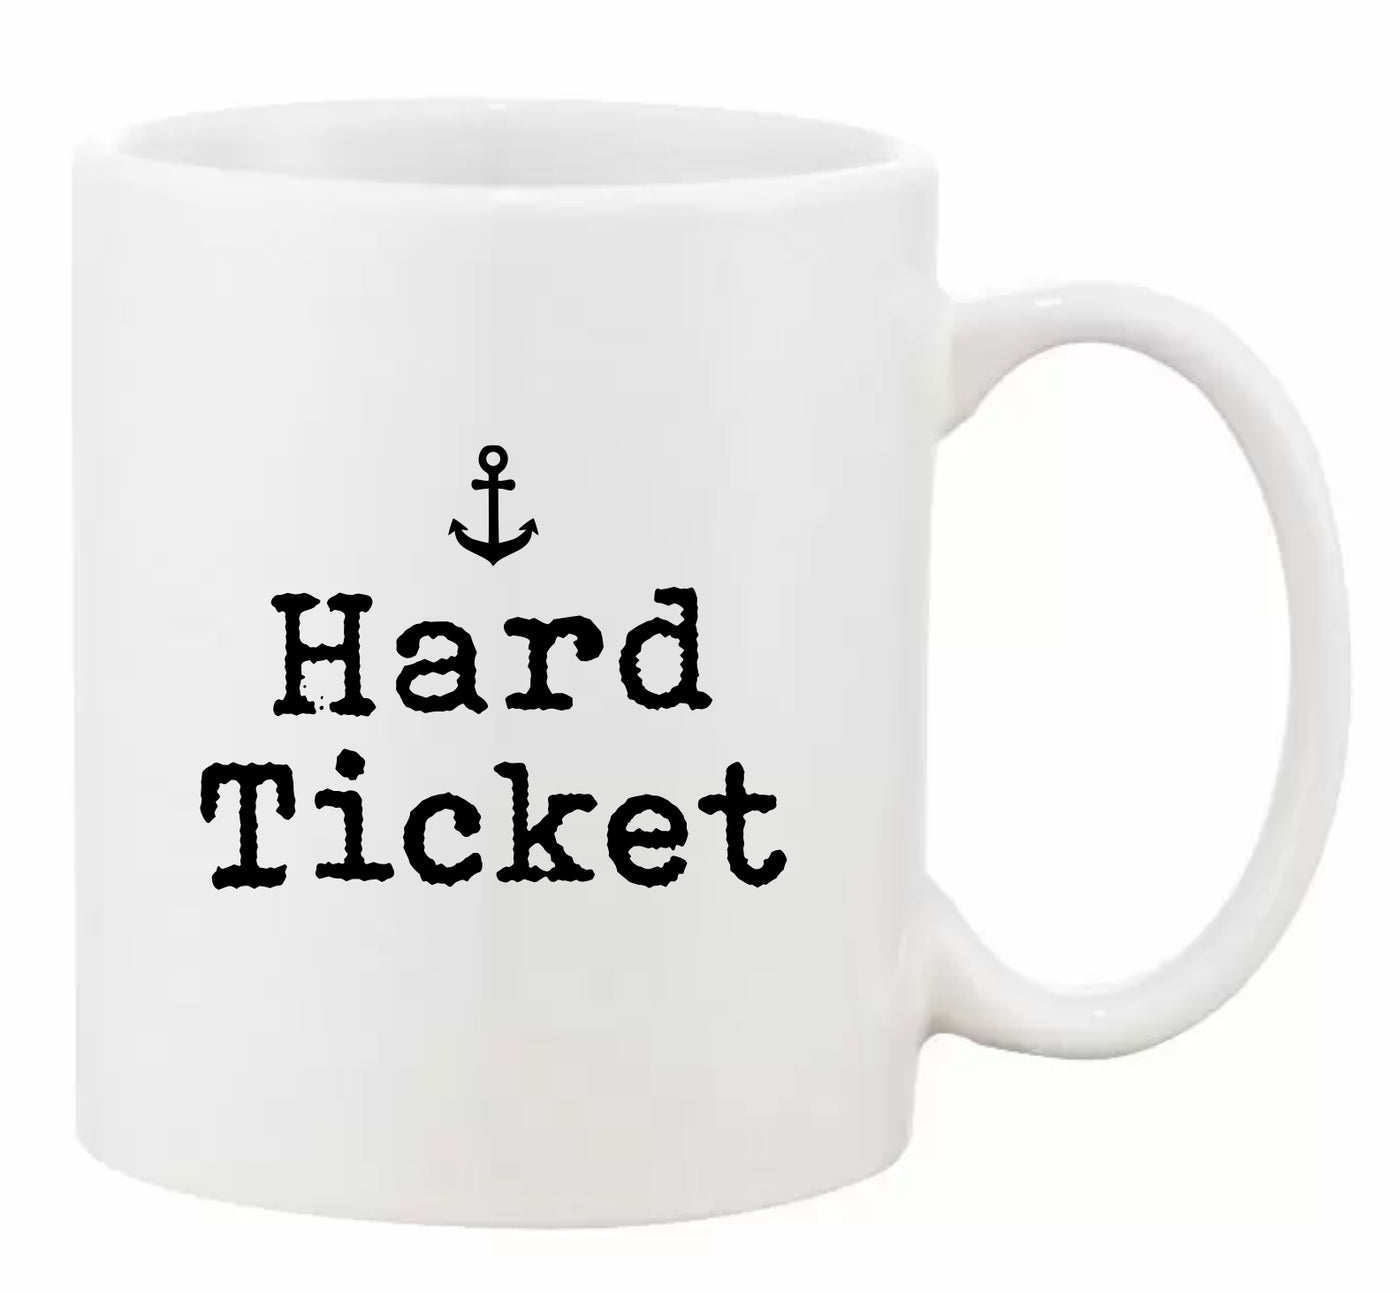 "Hard Ticket” Mug